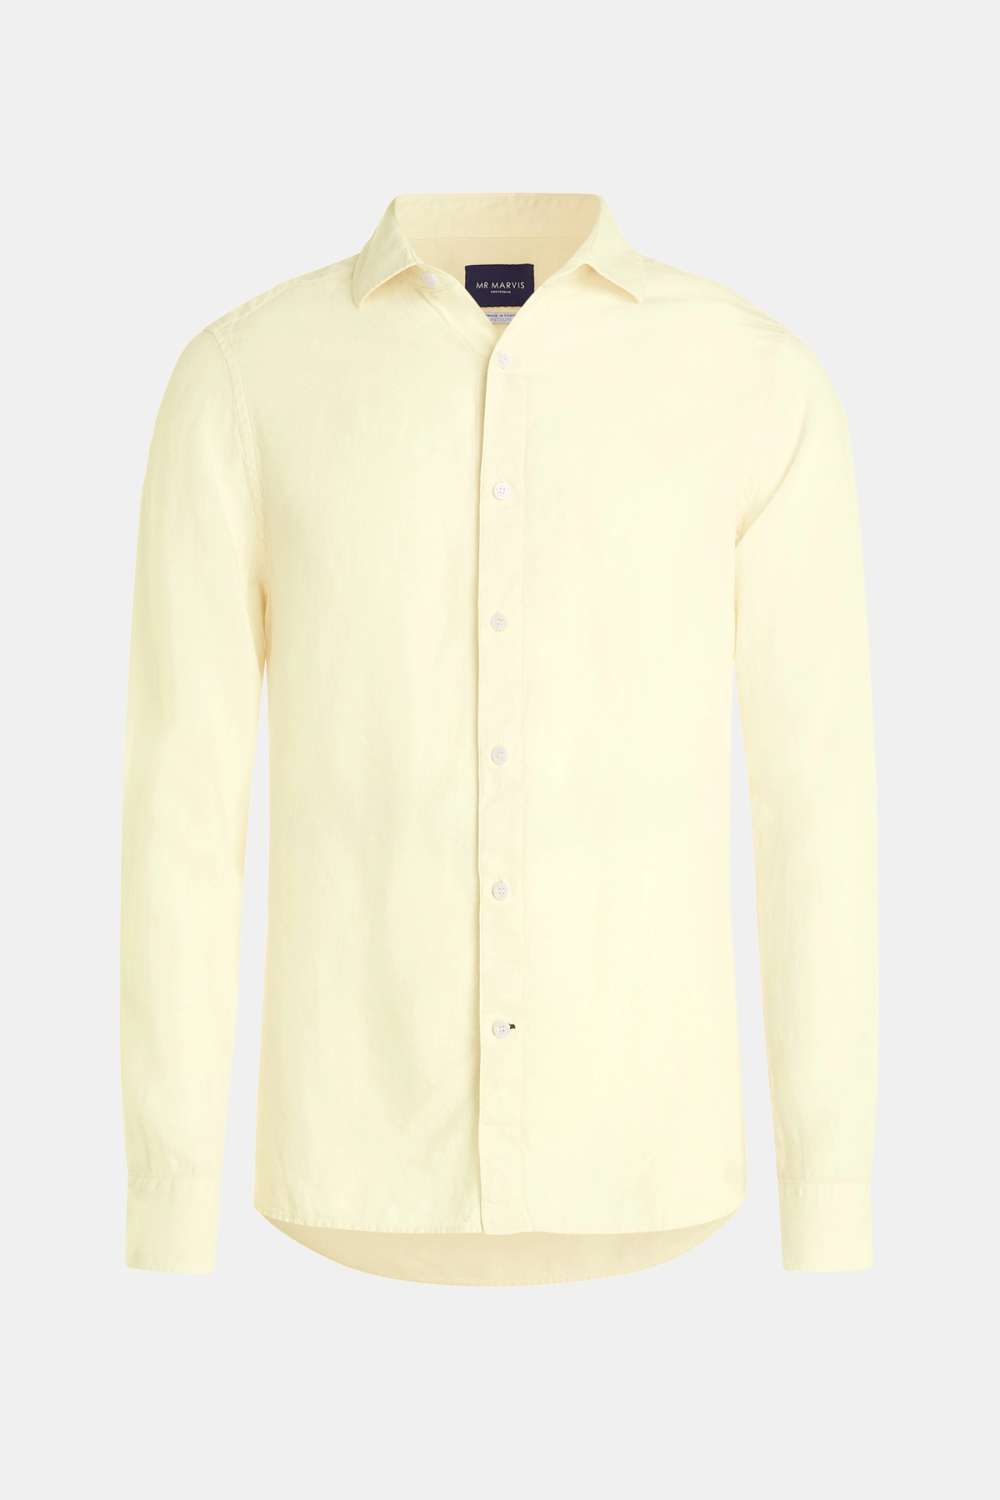 Limoncellos - The Linen Shirt